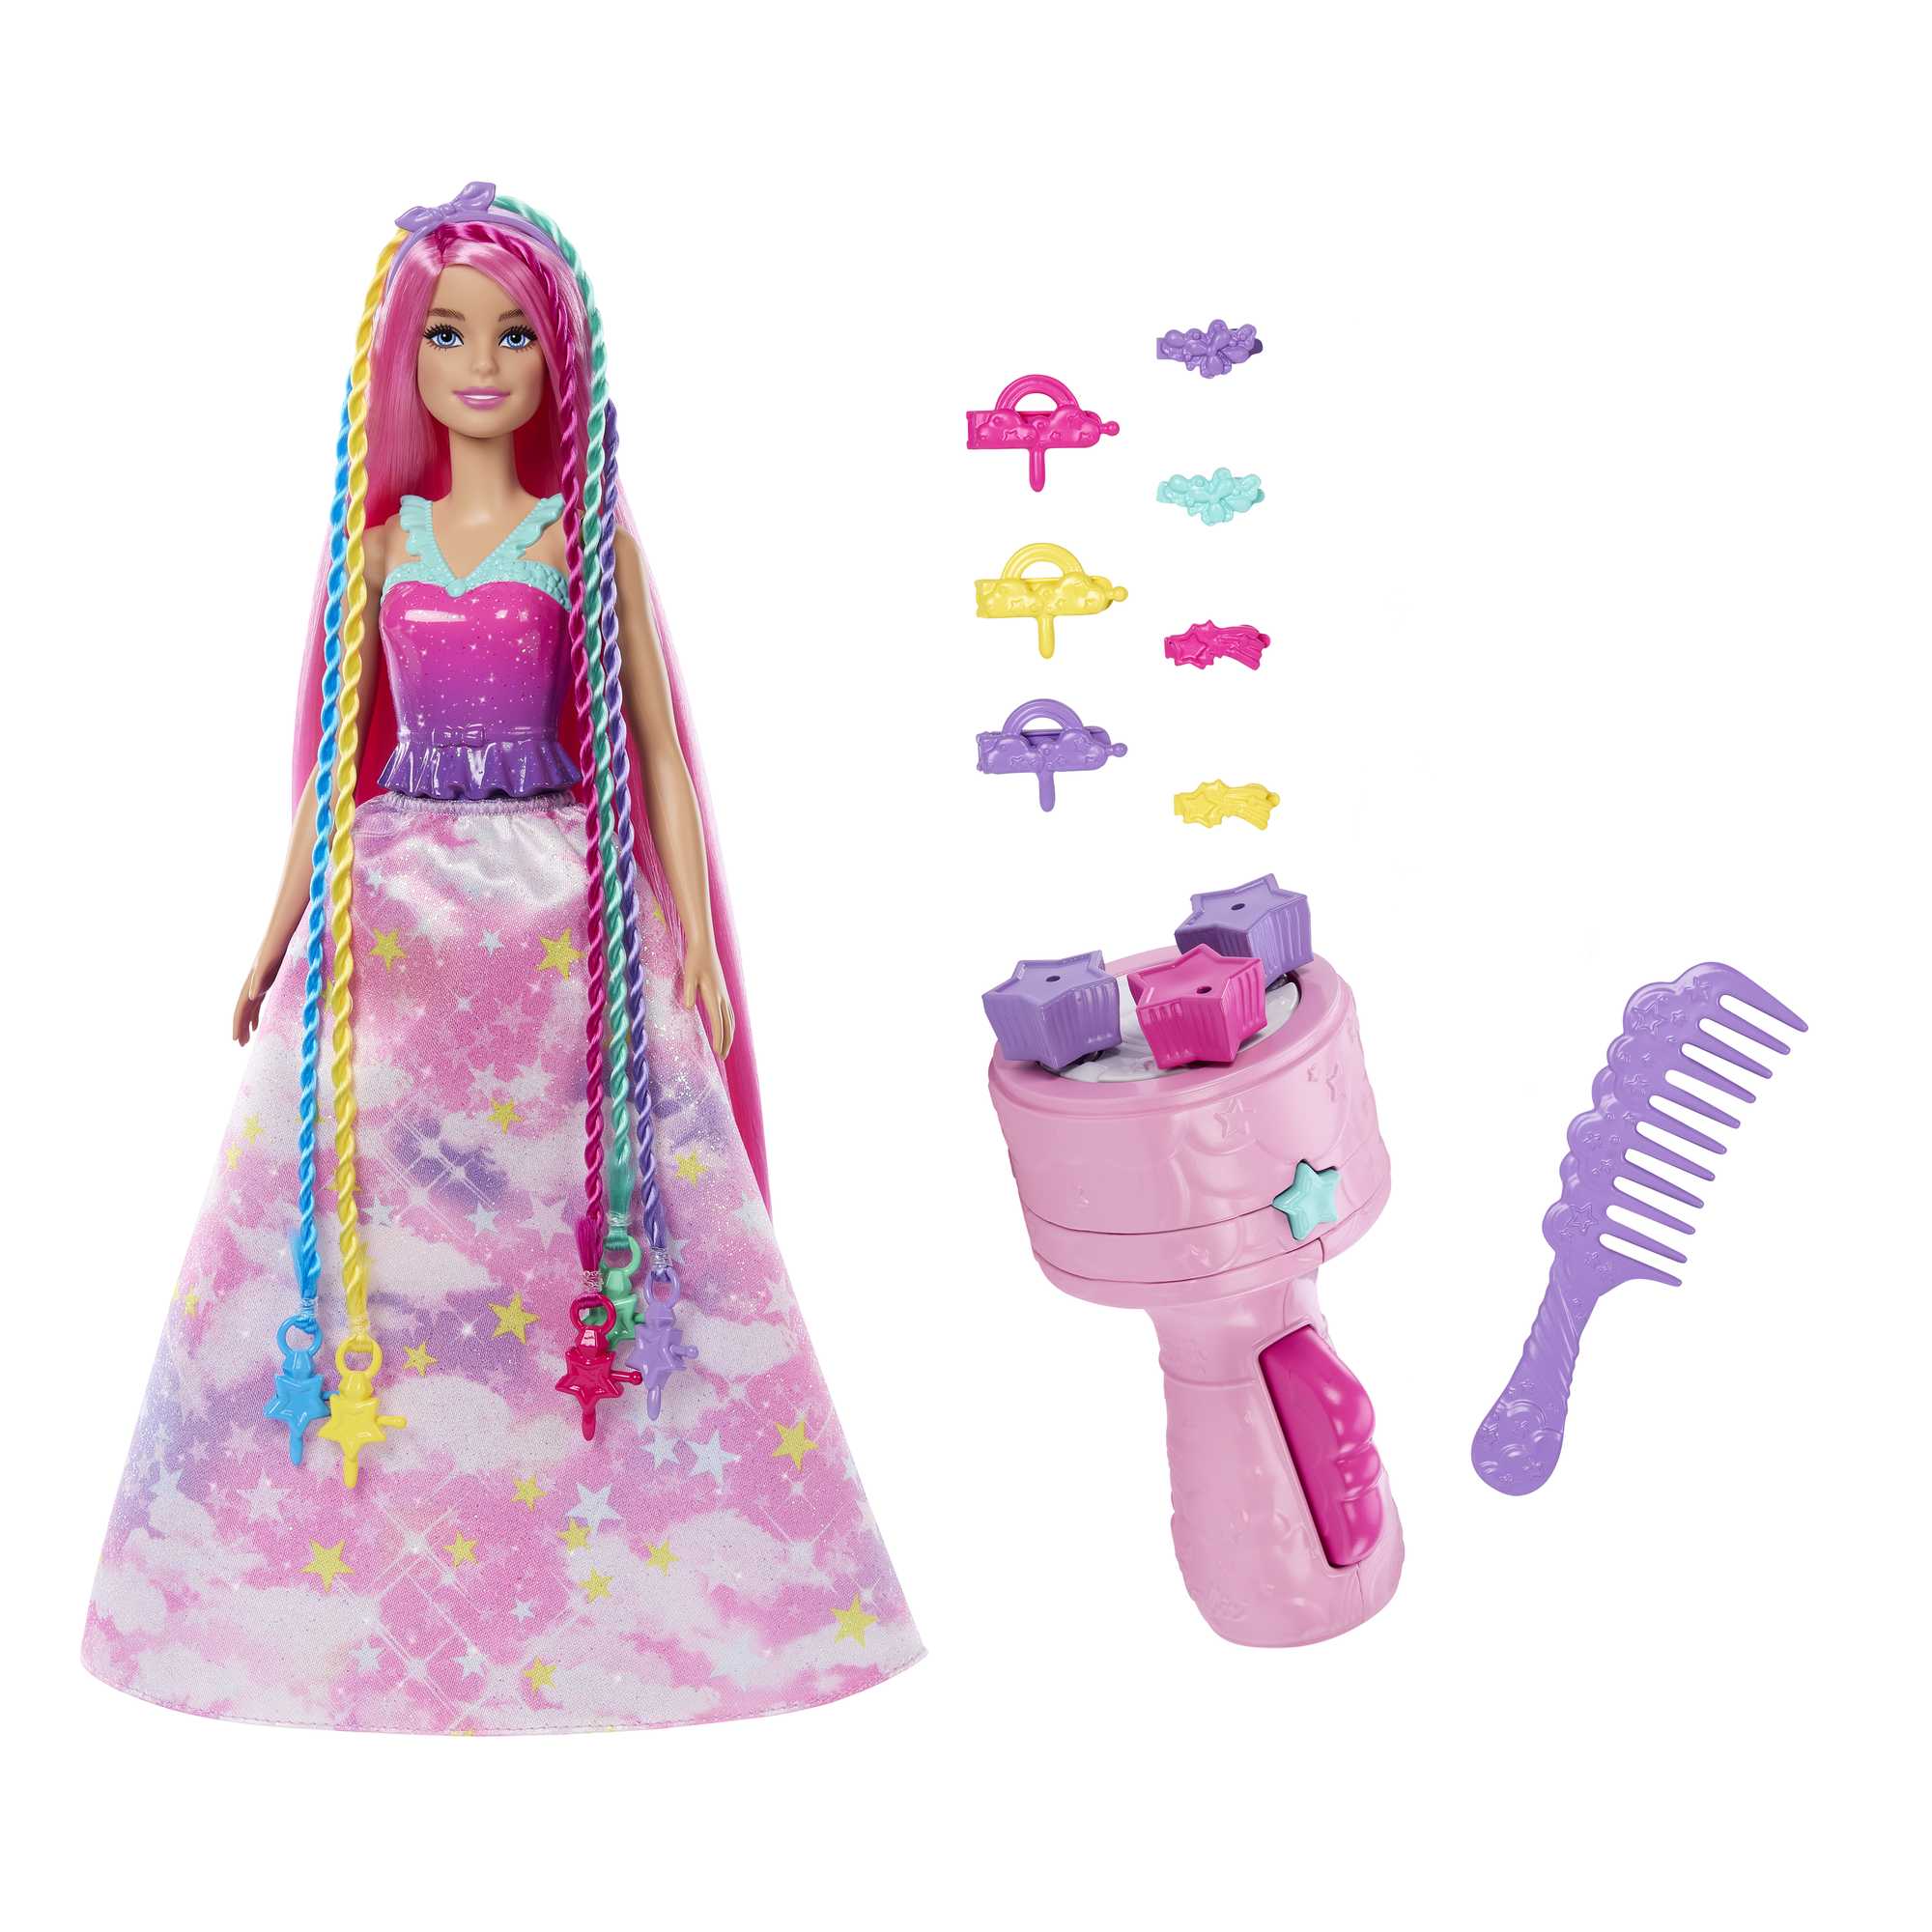 Barbie Doll | Braid and Twist Fantasy Hair Styling | Mattel